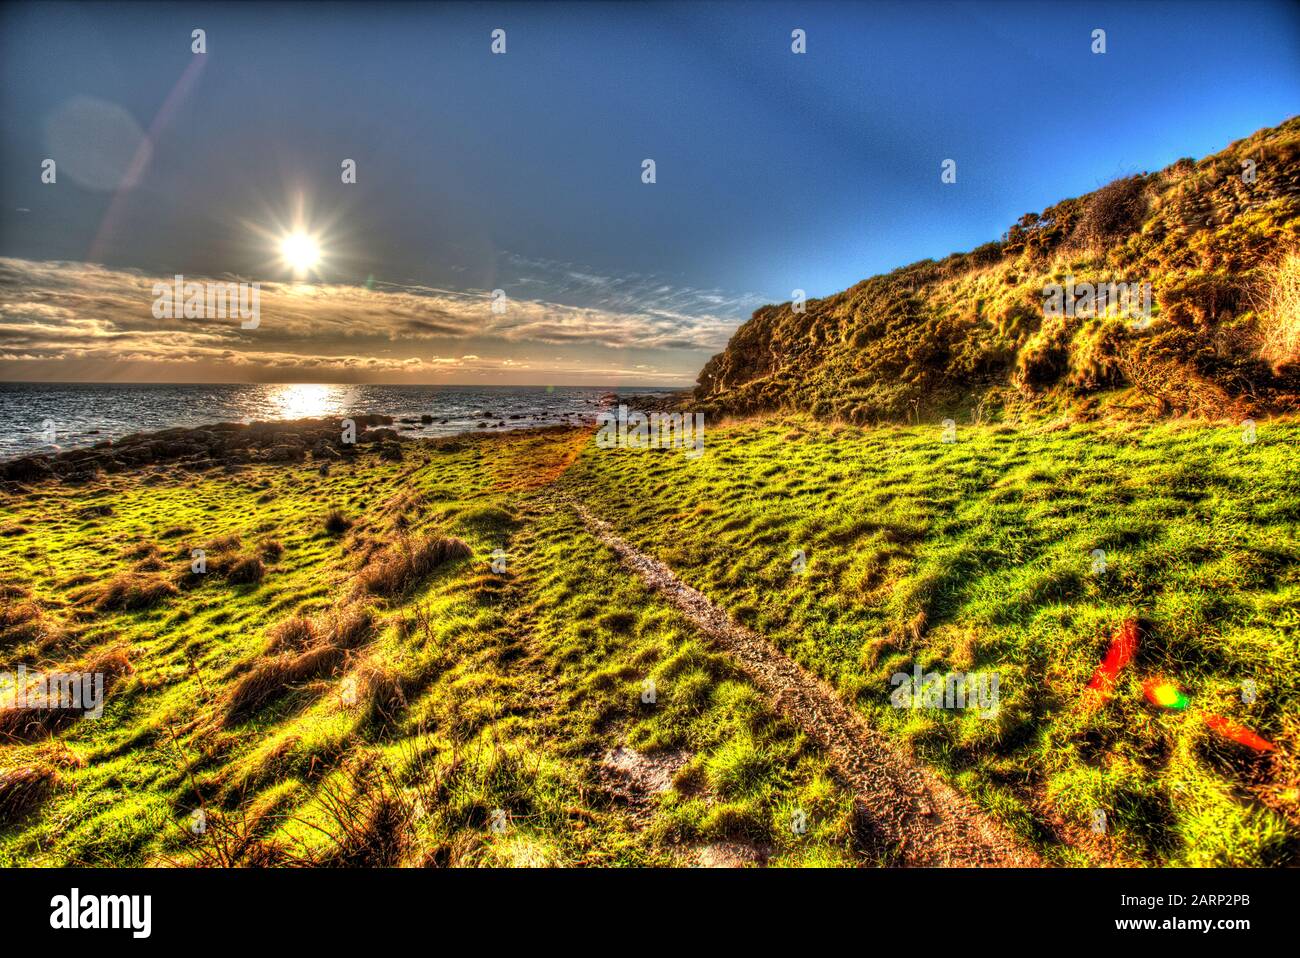 Fife Coastal Path, Schottland. Künstlerische Sicht auf den Küstenweg Fife zwischen den Dörfern Anstruther und Crail. Stockfoto